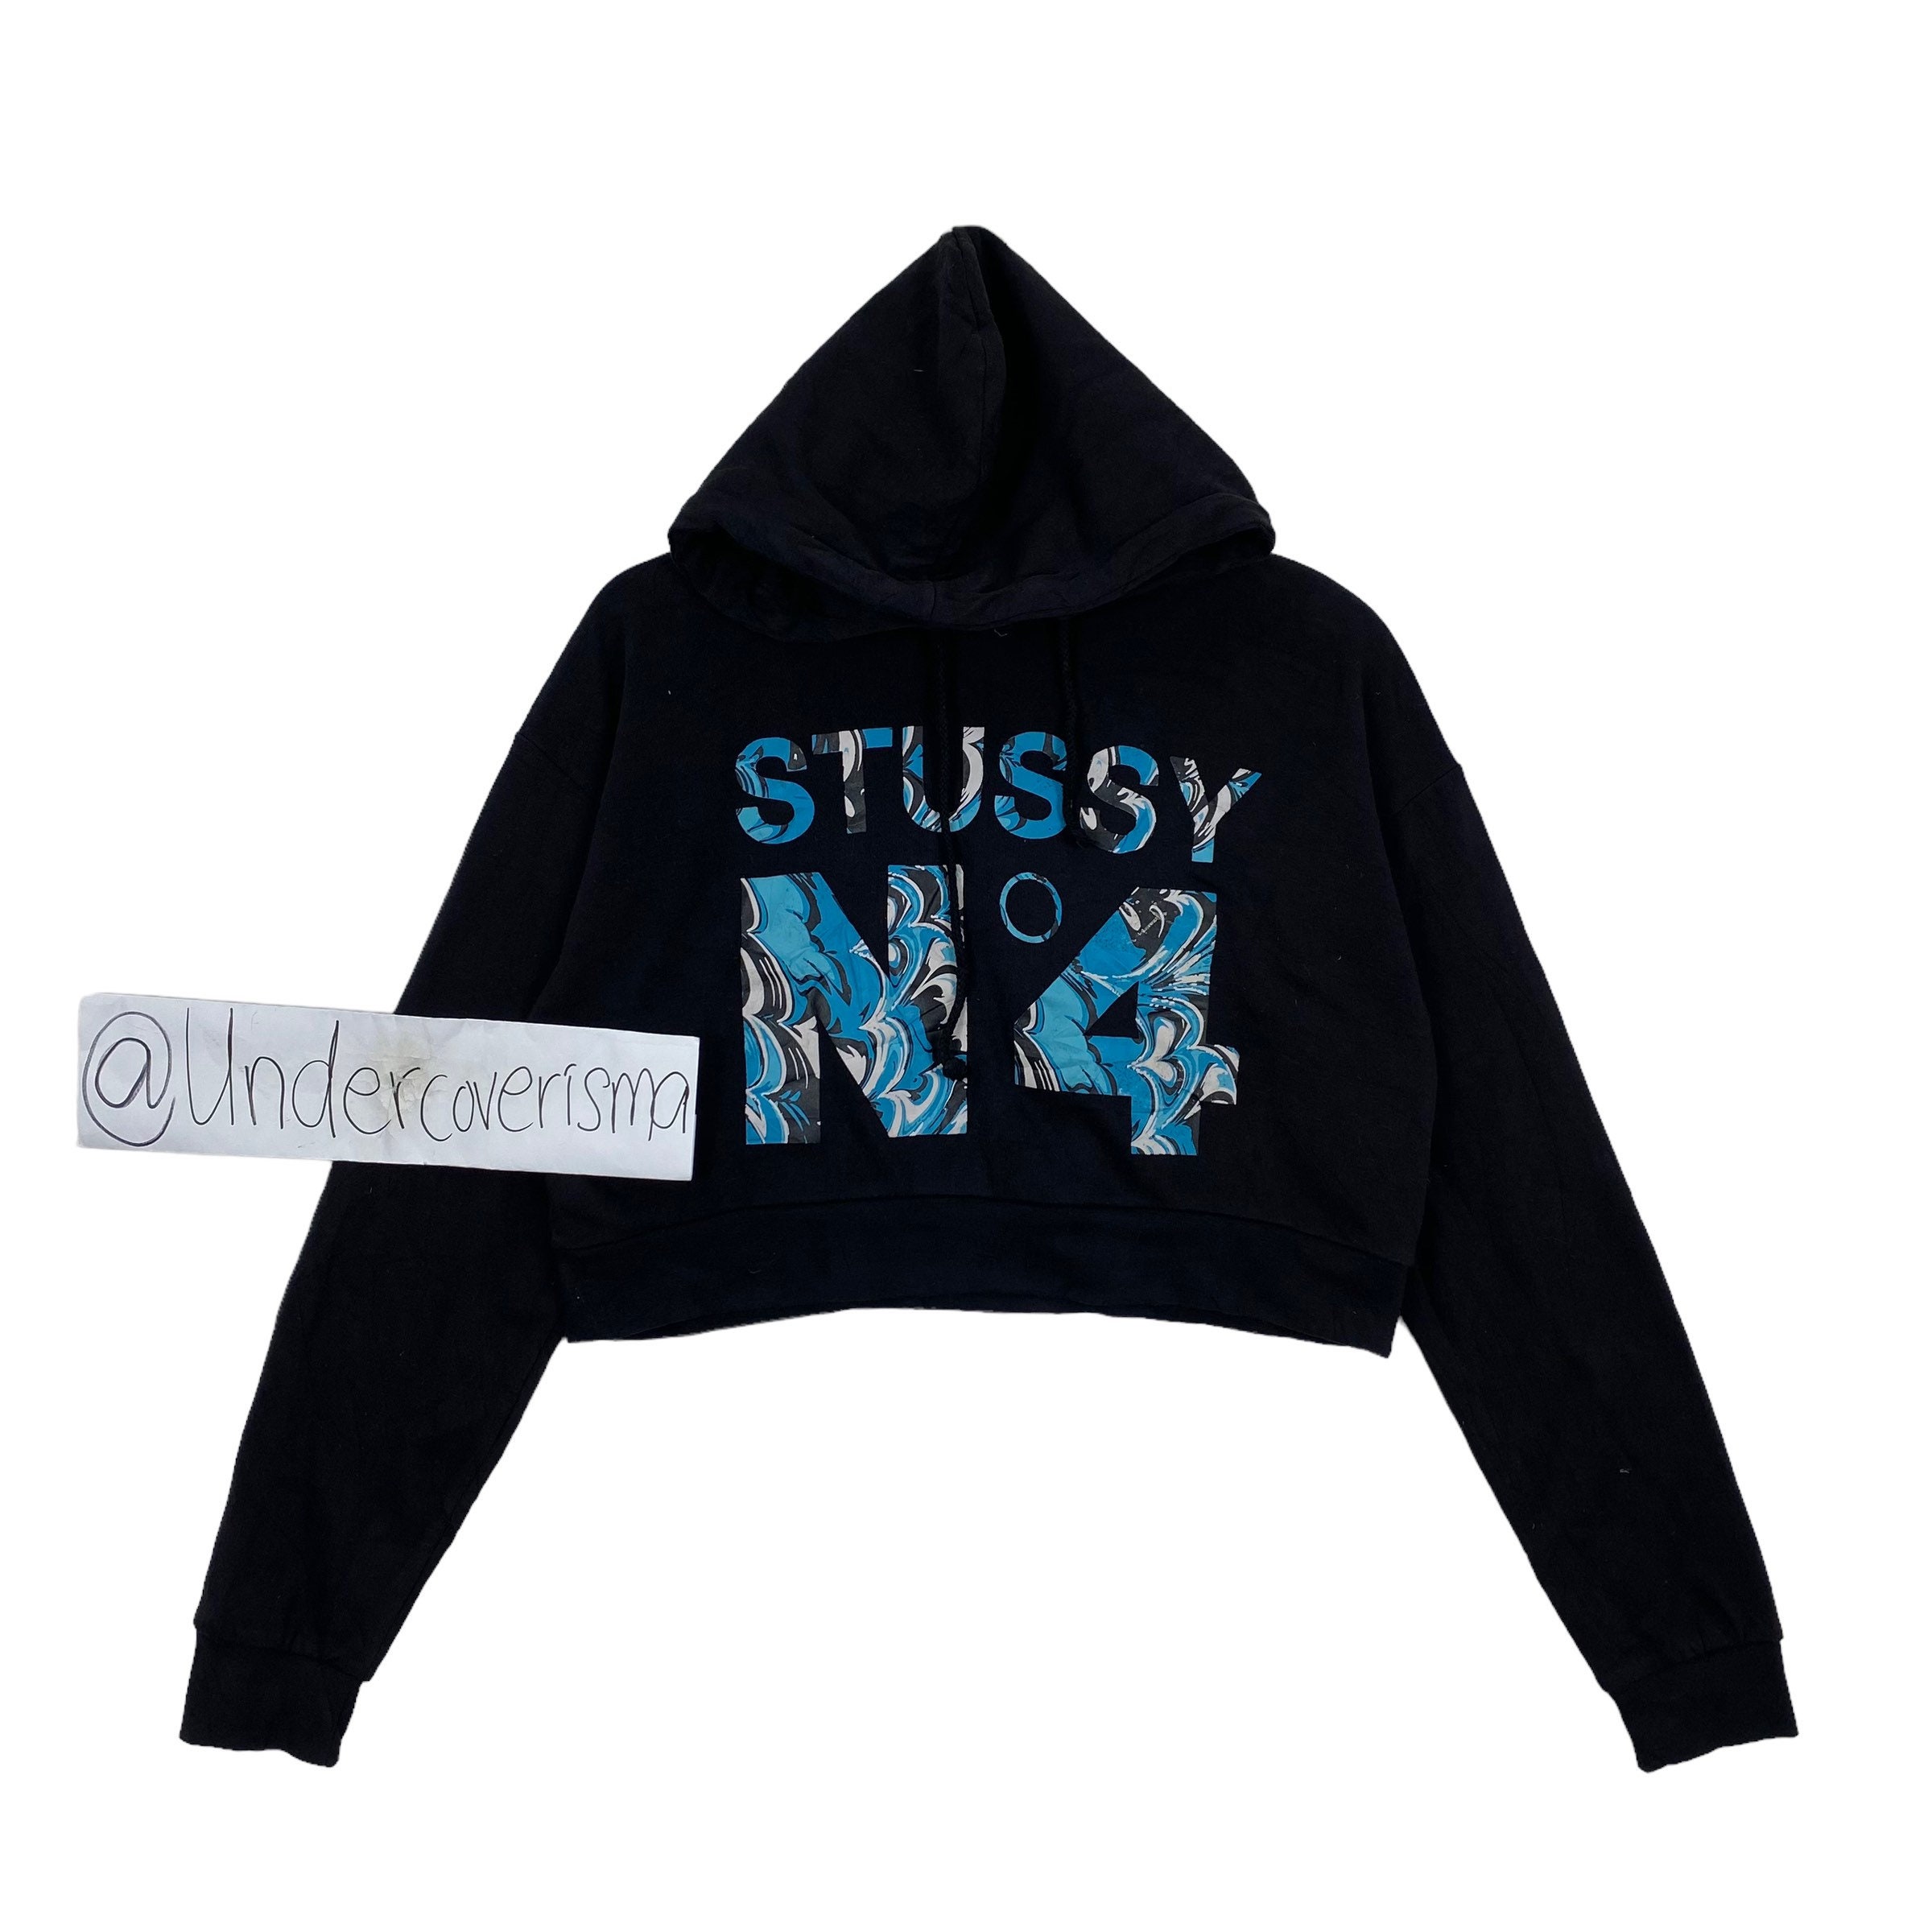 90s Vintage old Stussy Monogram N4 LOGO shirt hoodie Sweatshirt size M